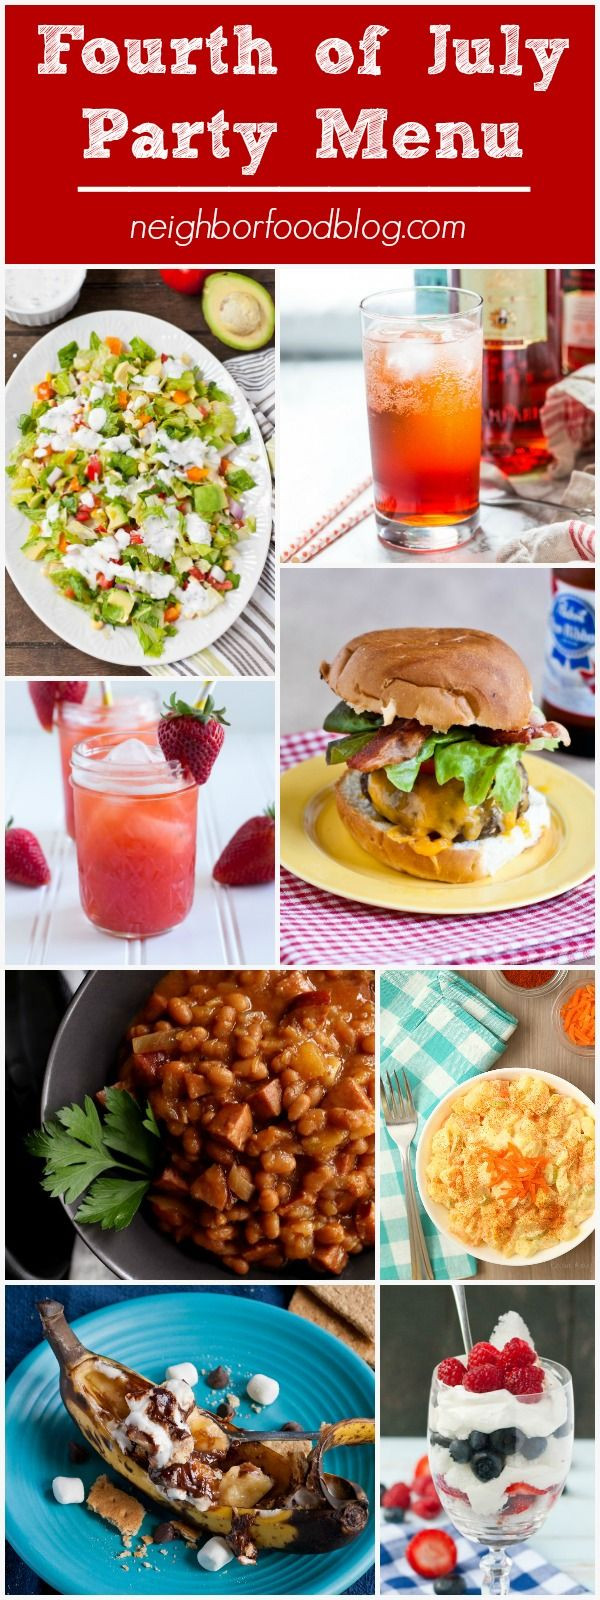 Summer Dinner Party Ideas
 Best 25 Summer dinner party menu ideas on Pinterest